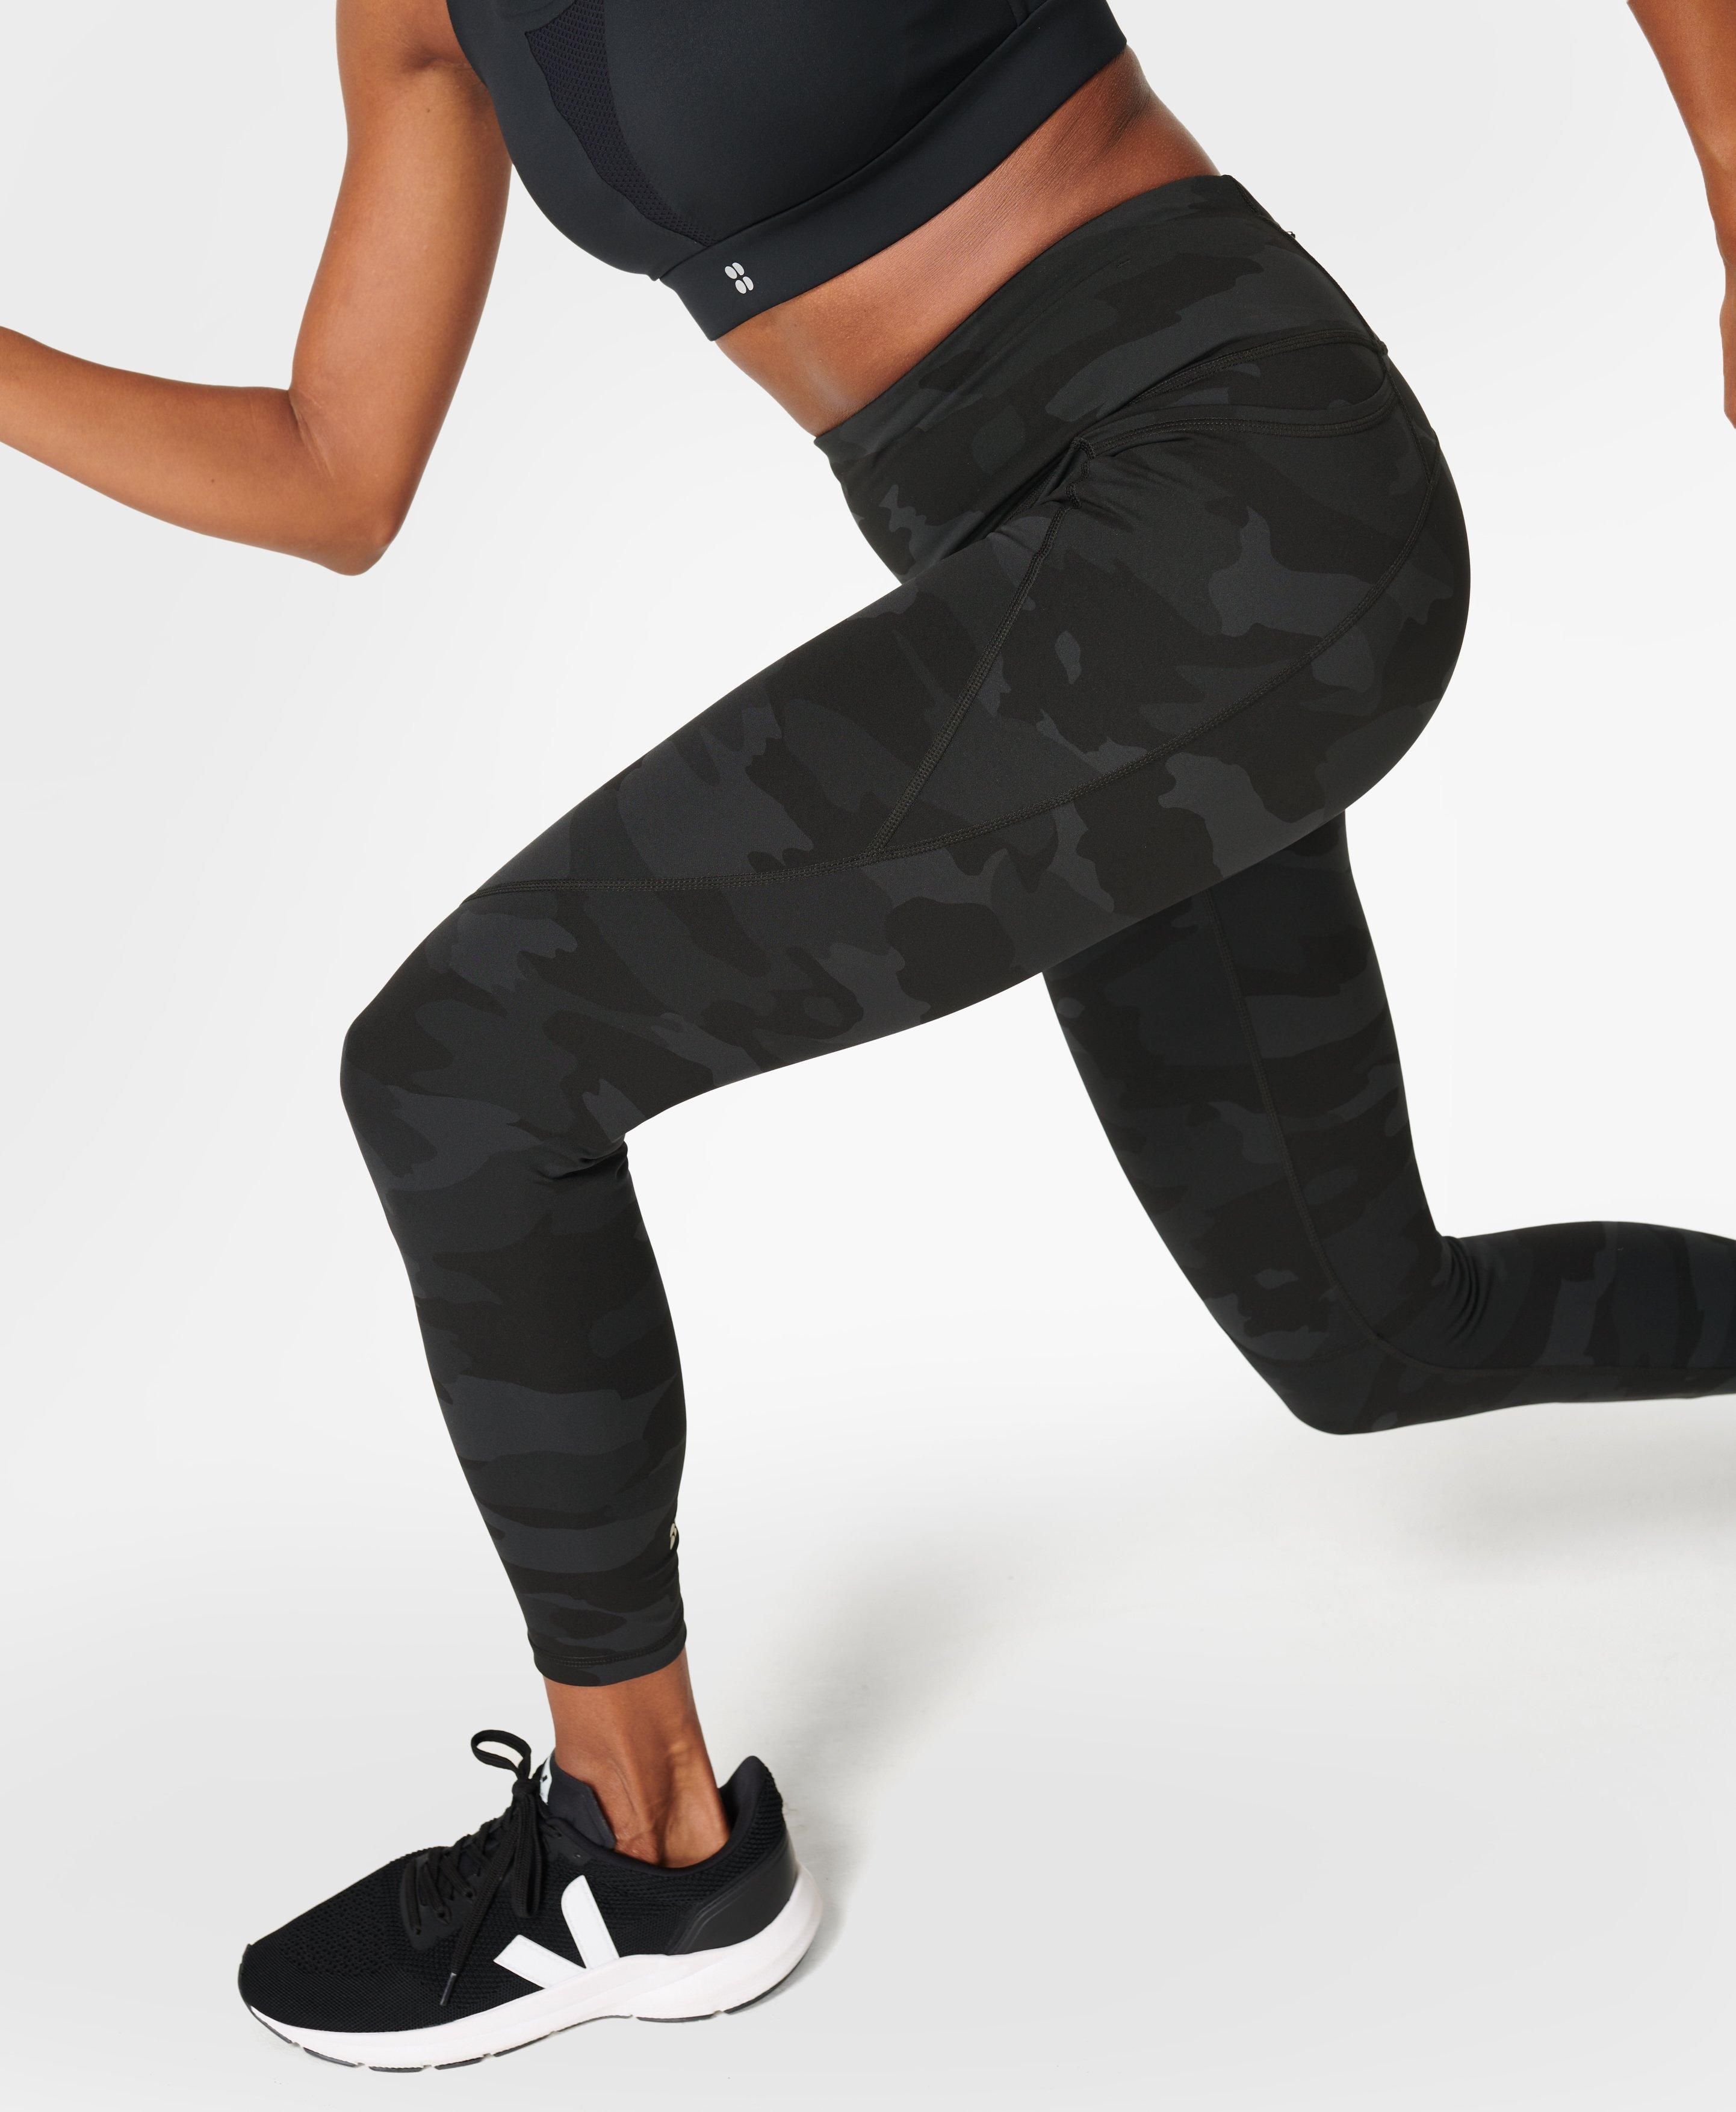 Power Workout Leggings - Ultra Black Camo Print